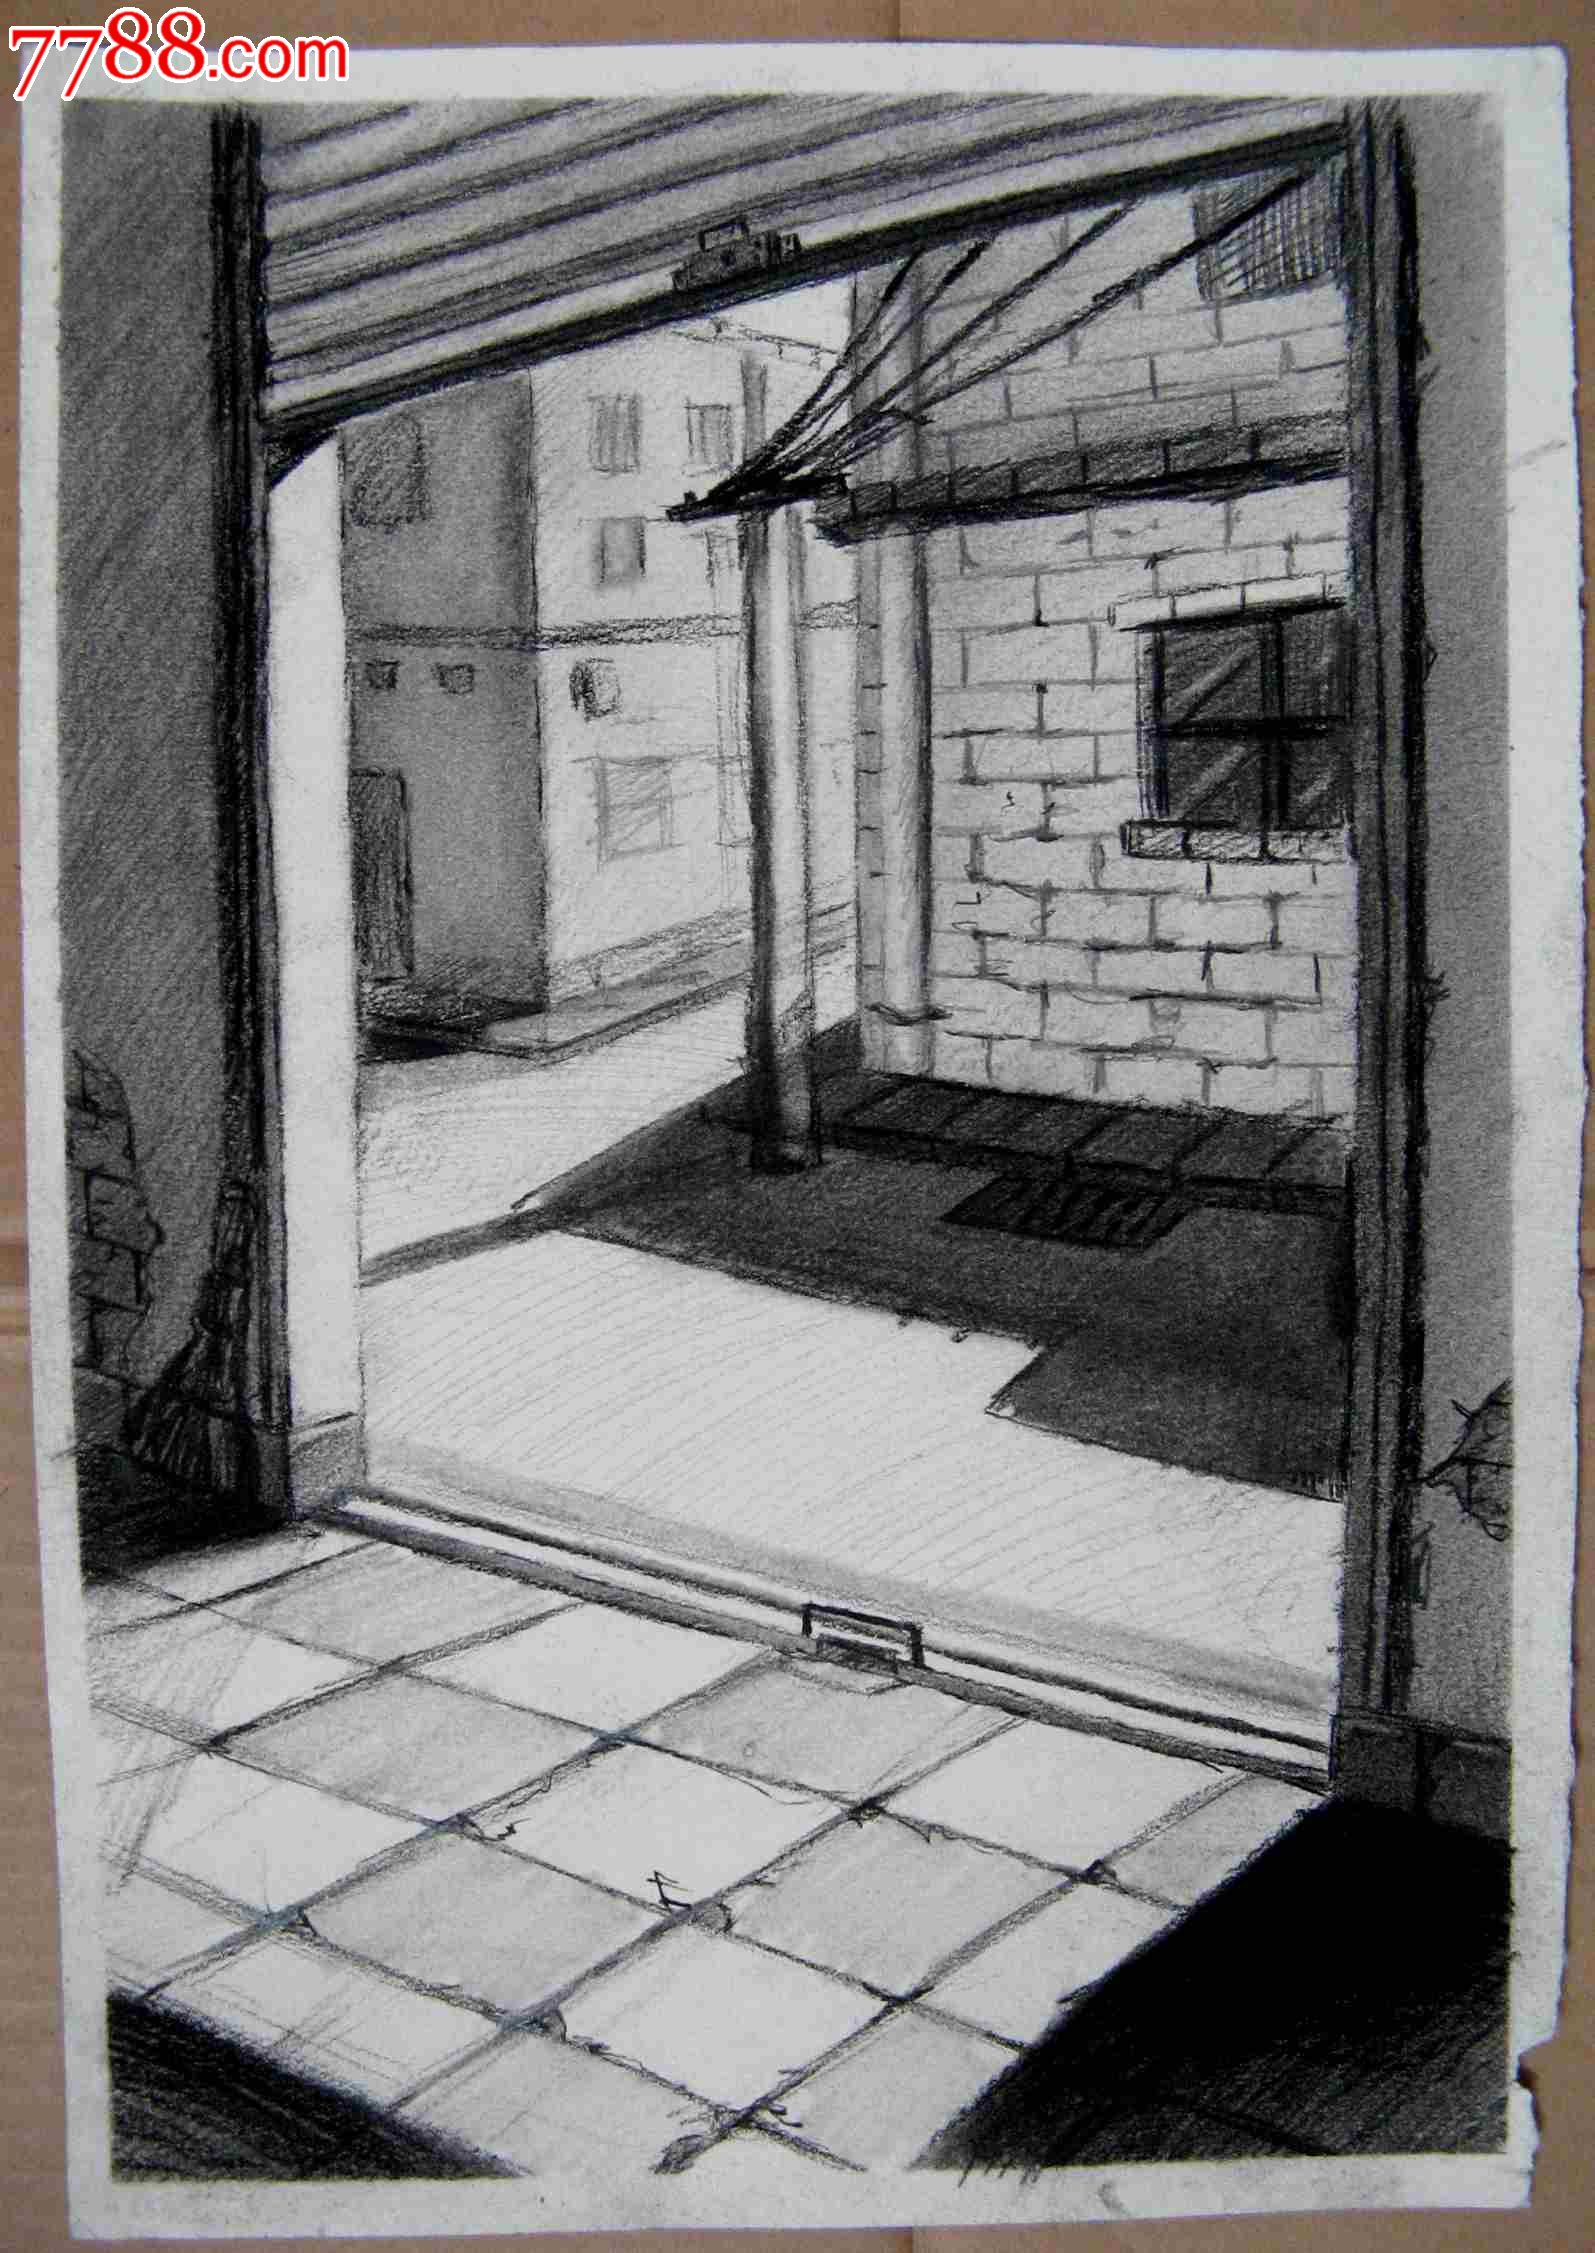 铅笔素描画:窗内看到的街景